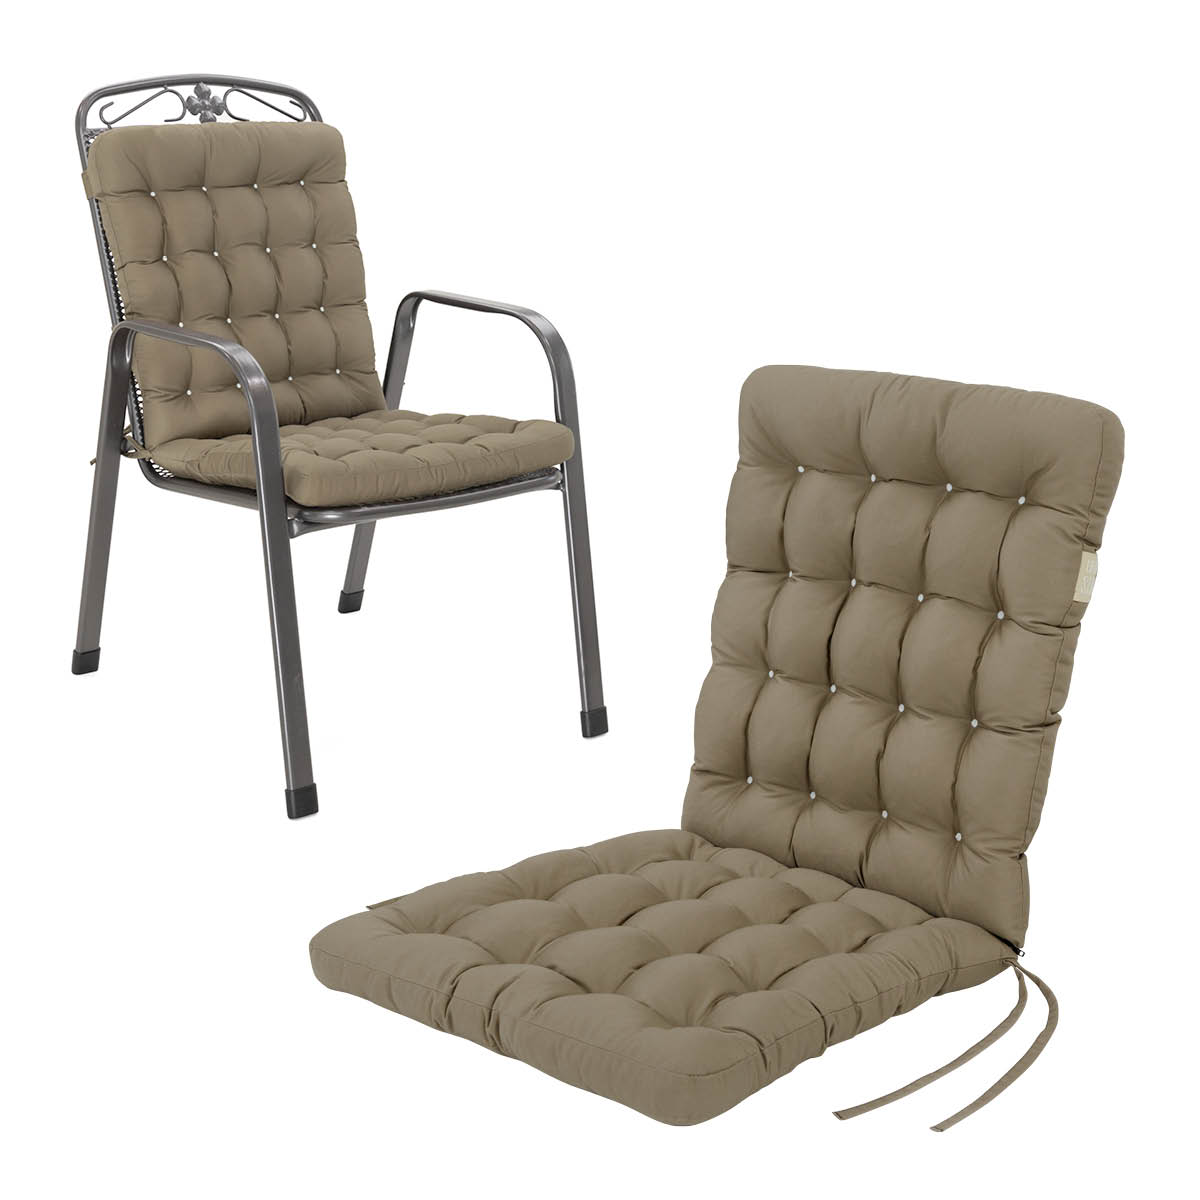 Cuscino per sedia con schienale basso 100x48 cm | Marrone dorato